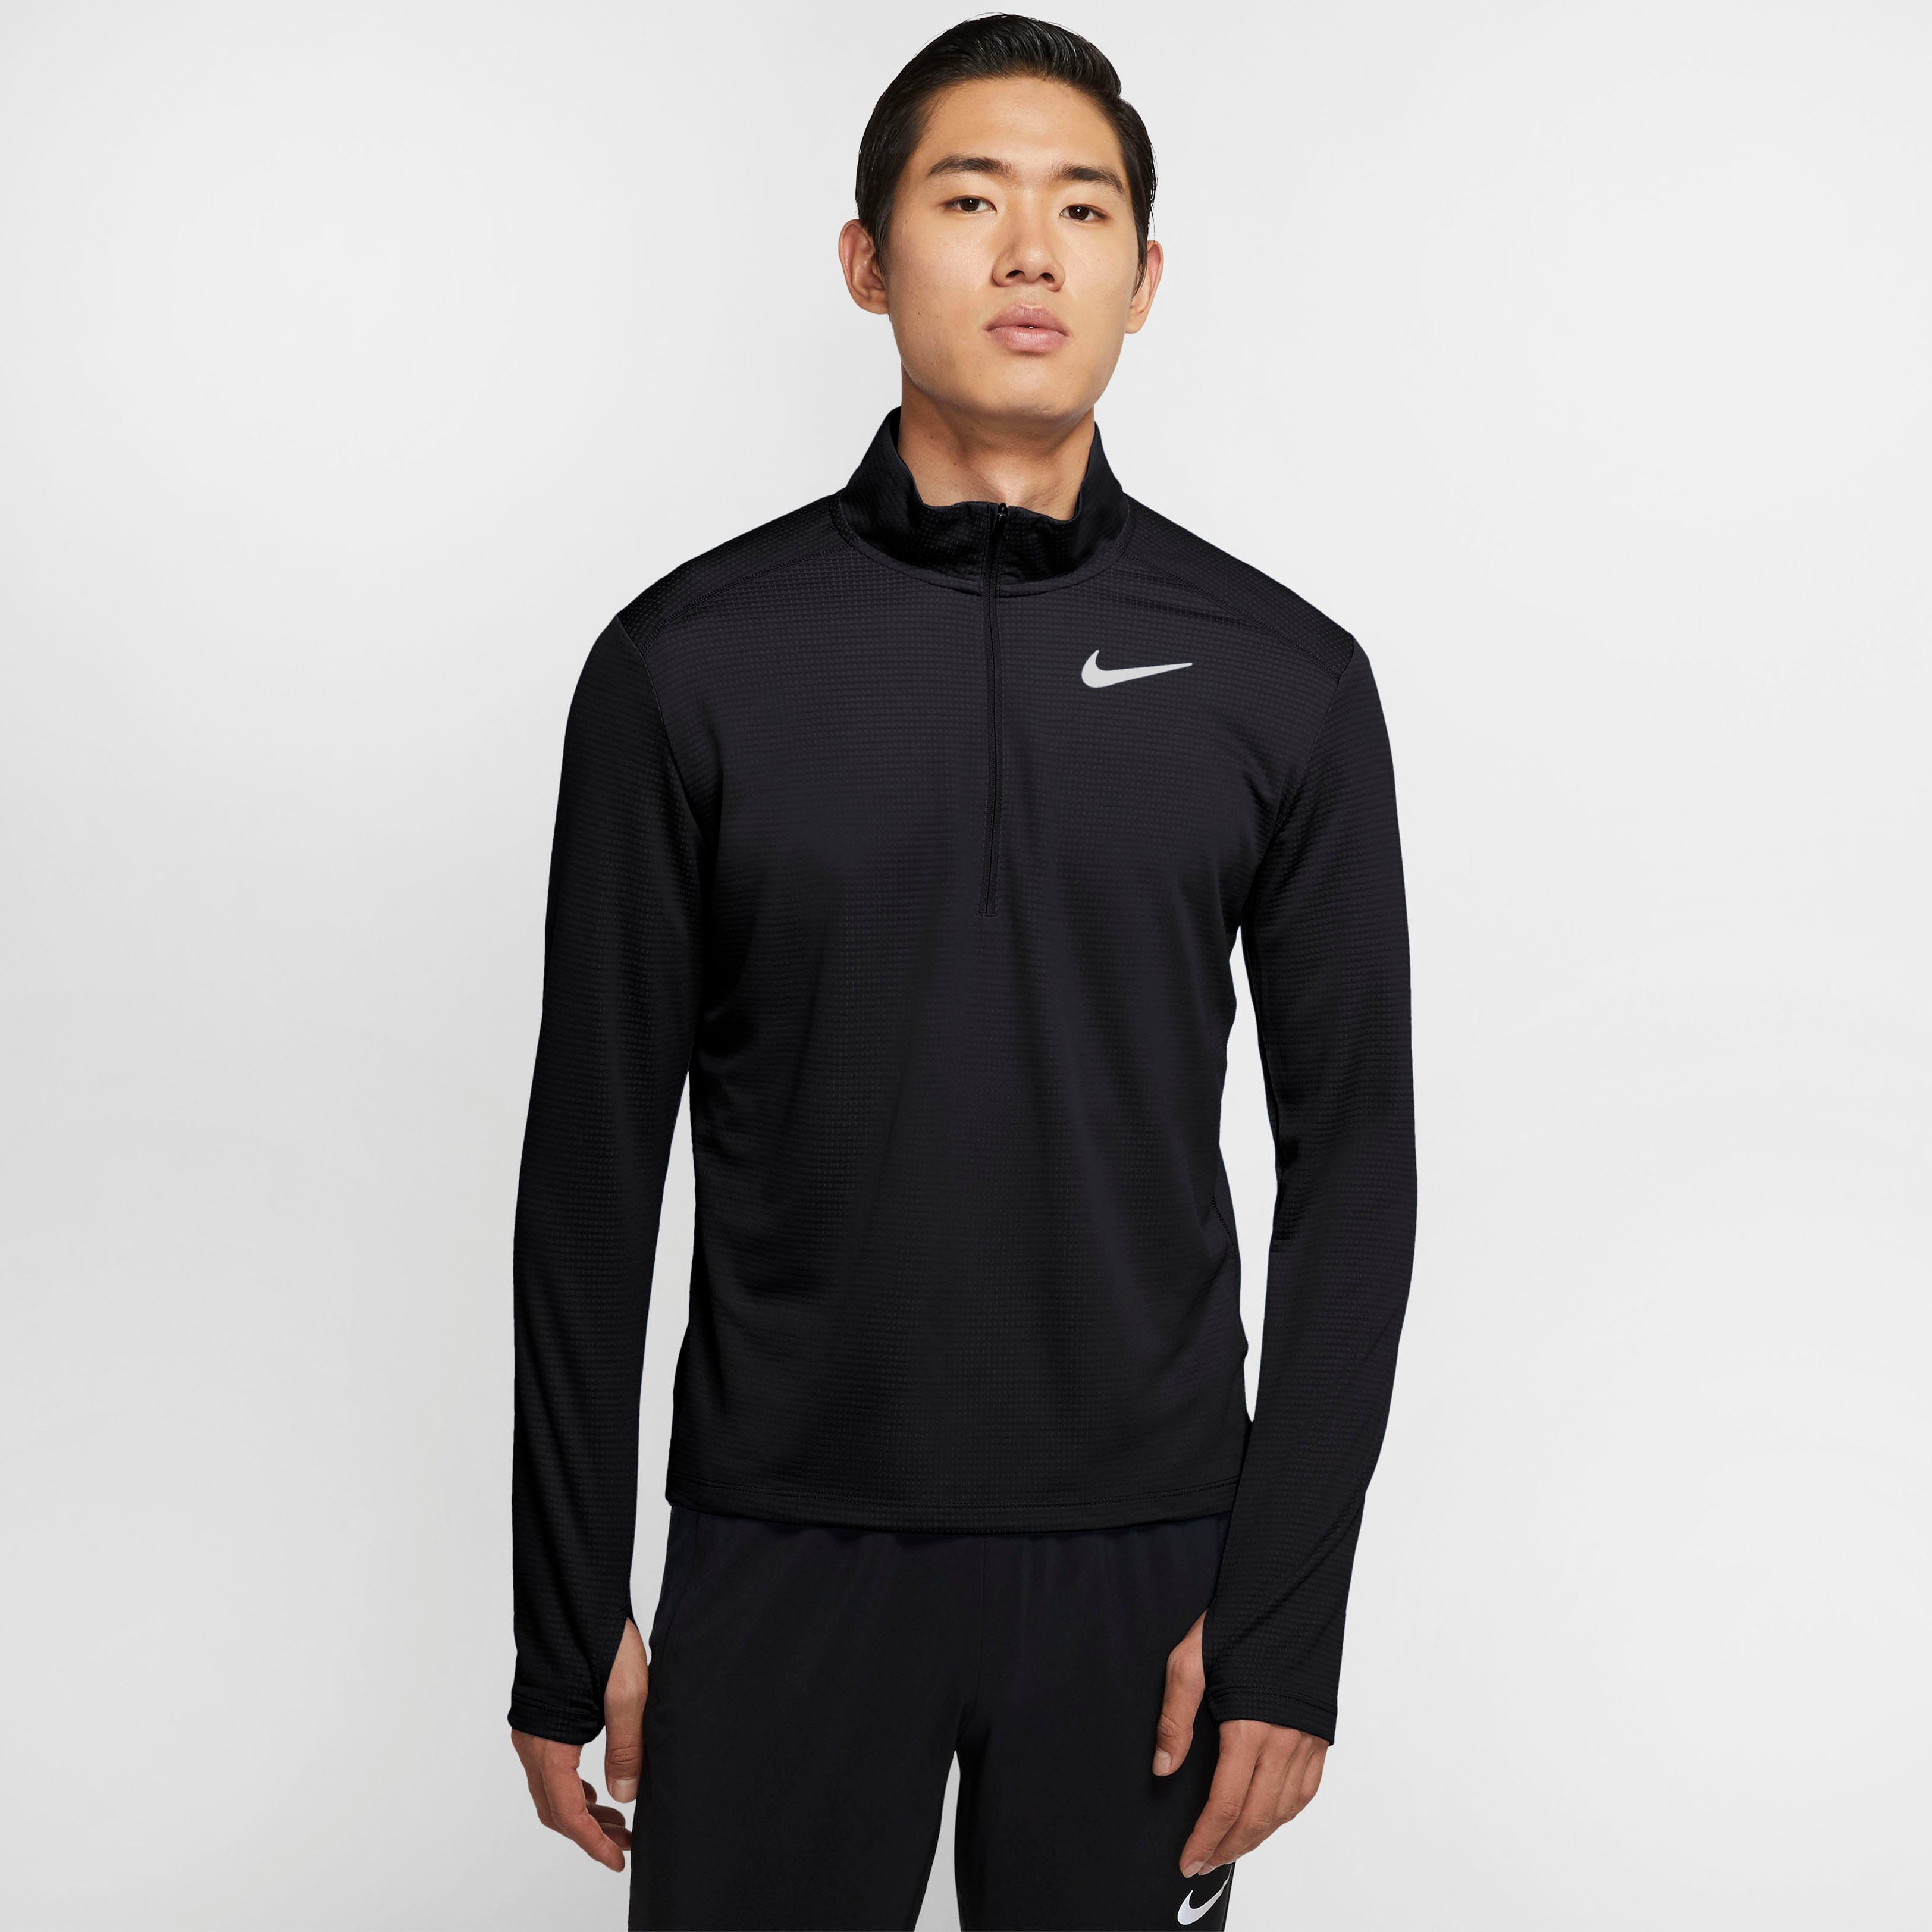 Nike RUNNING Laufshirt schwarz TOP PACER MEN'S 1/-ZIP